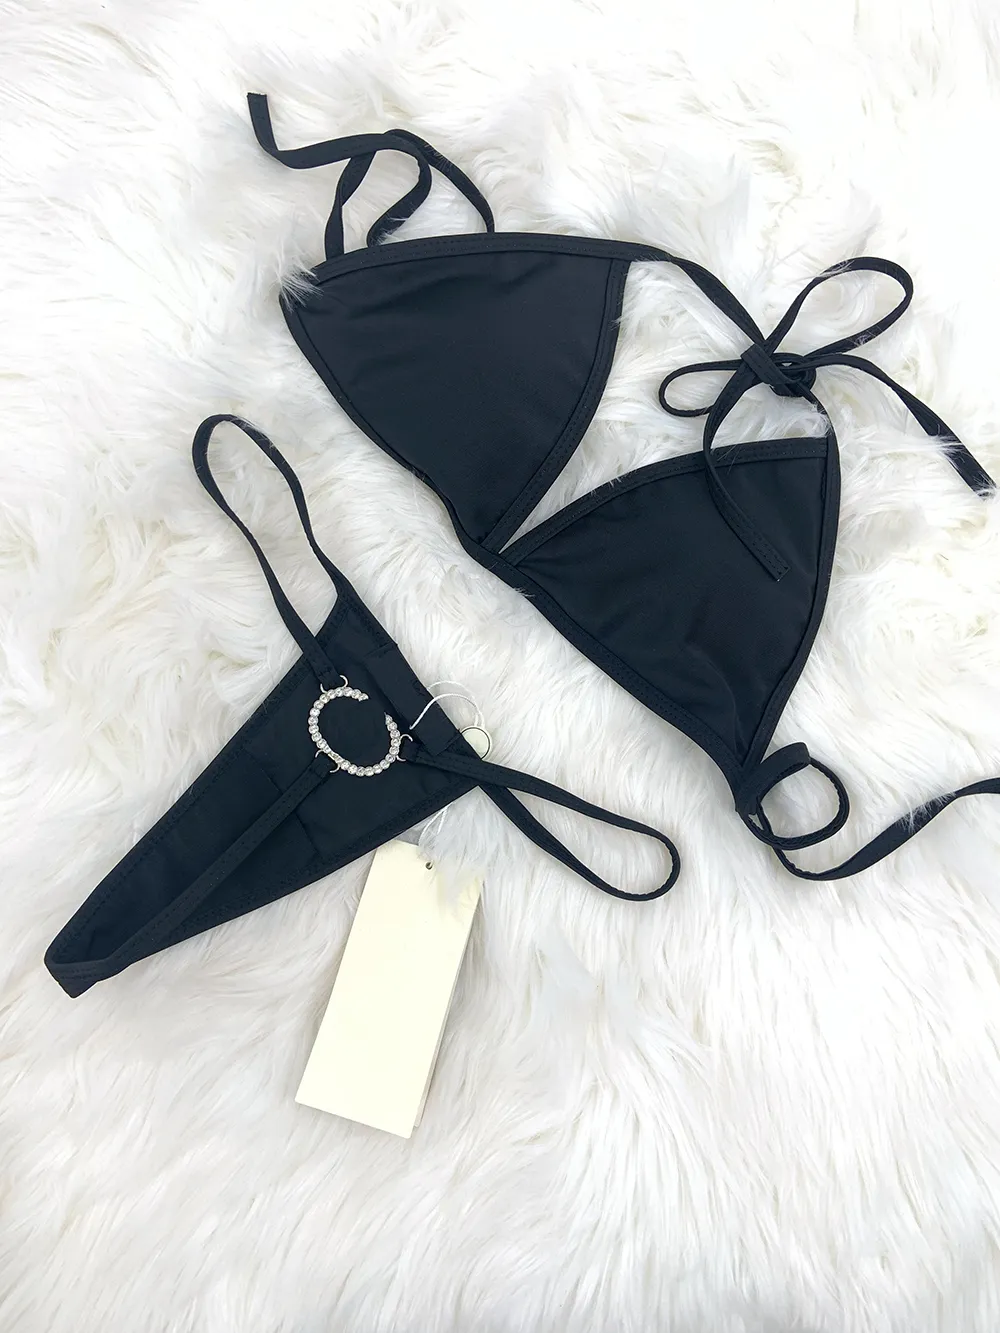 Najlepiej sprzedający się damski strój kąpielowy f seksowny projektant stroju kąpielowego trójwymiarowy garnitur bikini tkaninowy strój kąpielowy o niskim poziomie stroju kąpielowego damskie stroje kąpielowe seksowne jednoczęściowe 23